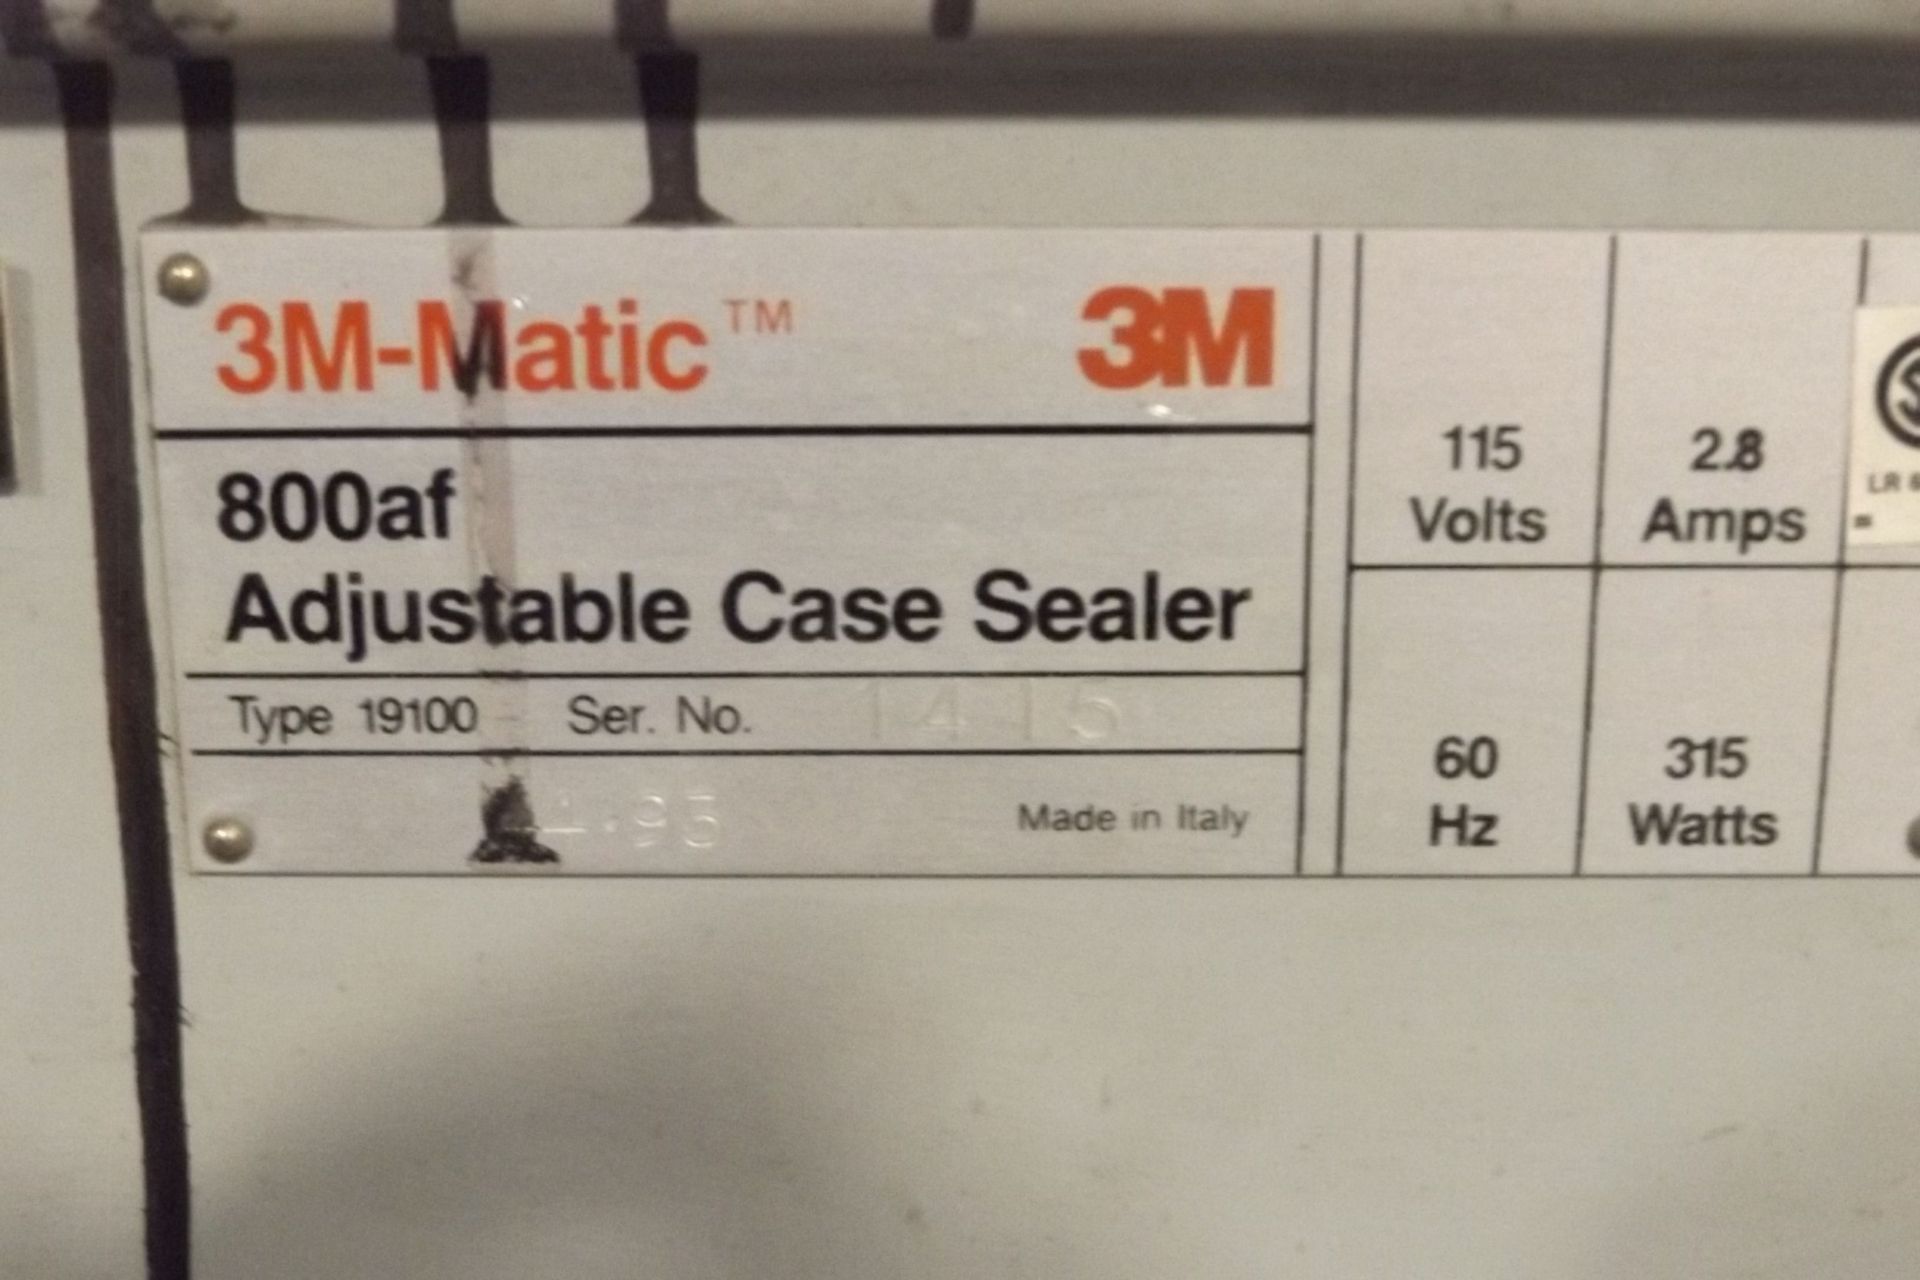 3M Matic Case Sealer, MODEL# 800AF, SER# 44.93, CW/ DISCHARGE LIFT GATE (W2) - Image 4 of 8